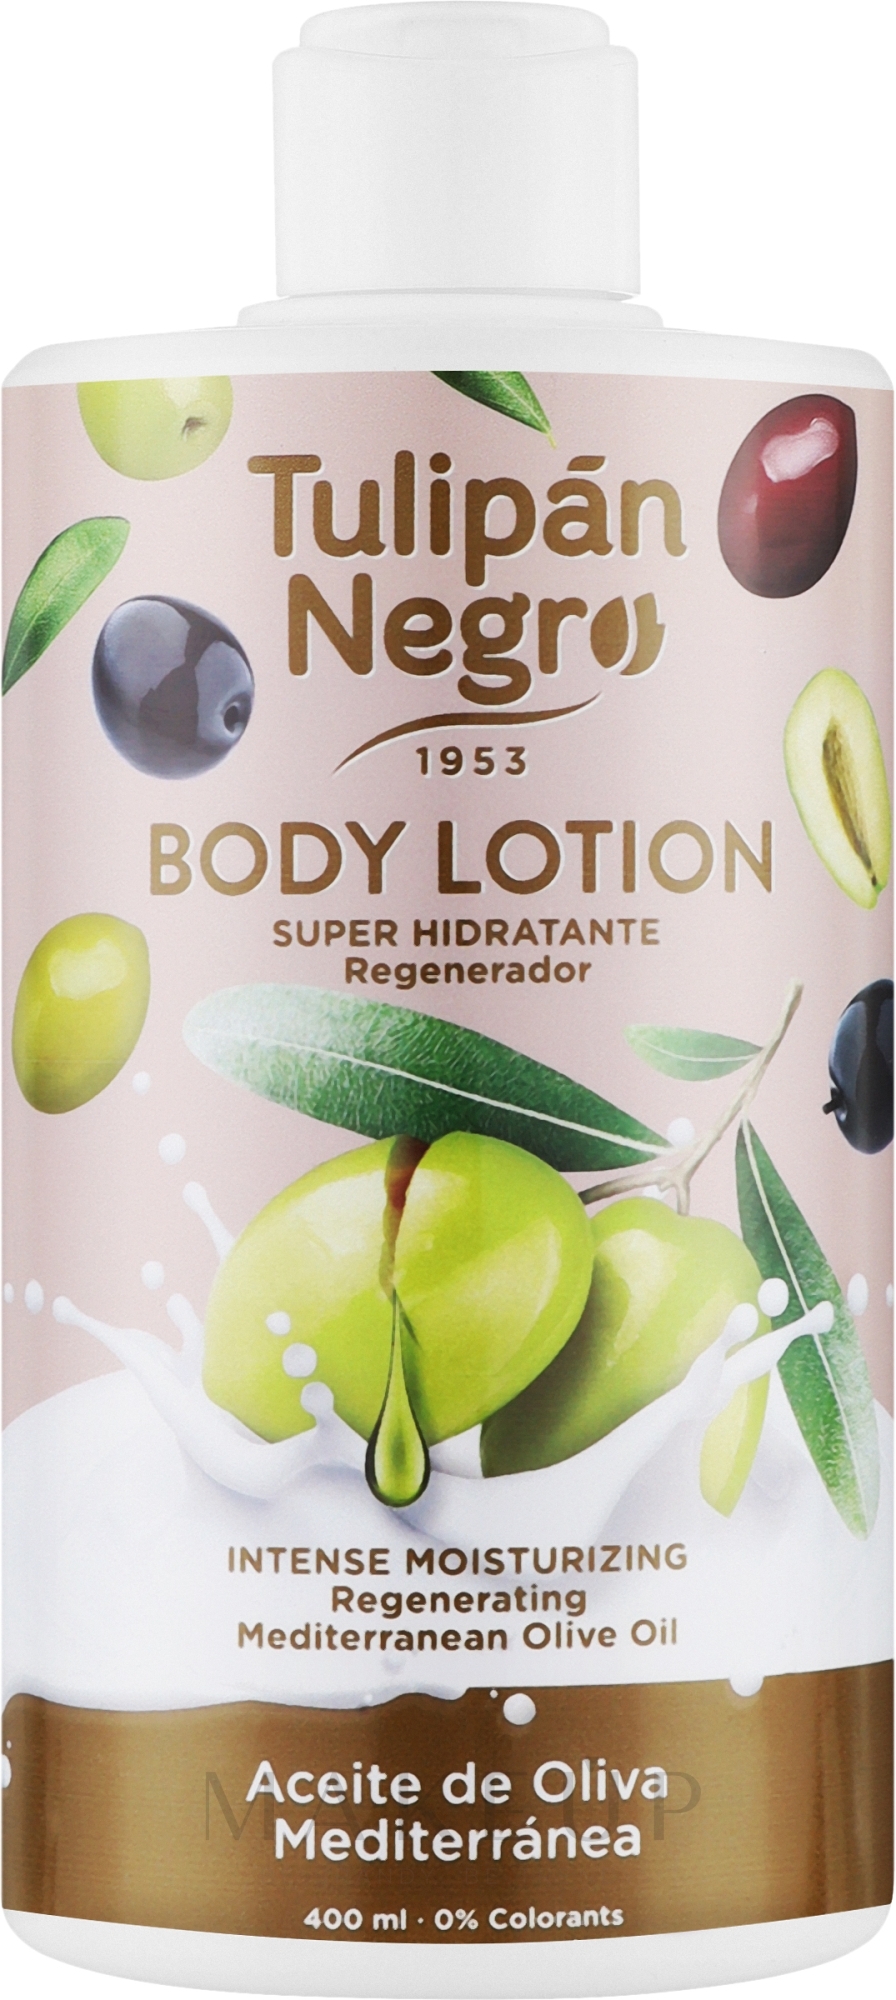 Körperlotion Mediterranes Olivenöl - Tulipan Negro Mediterranean Olive Oil Body Lotion — Bild 400 ml